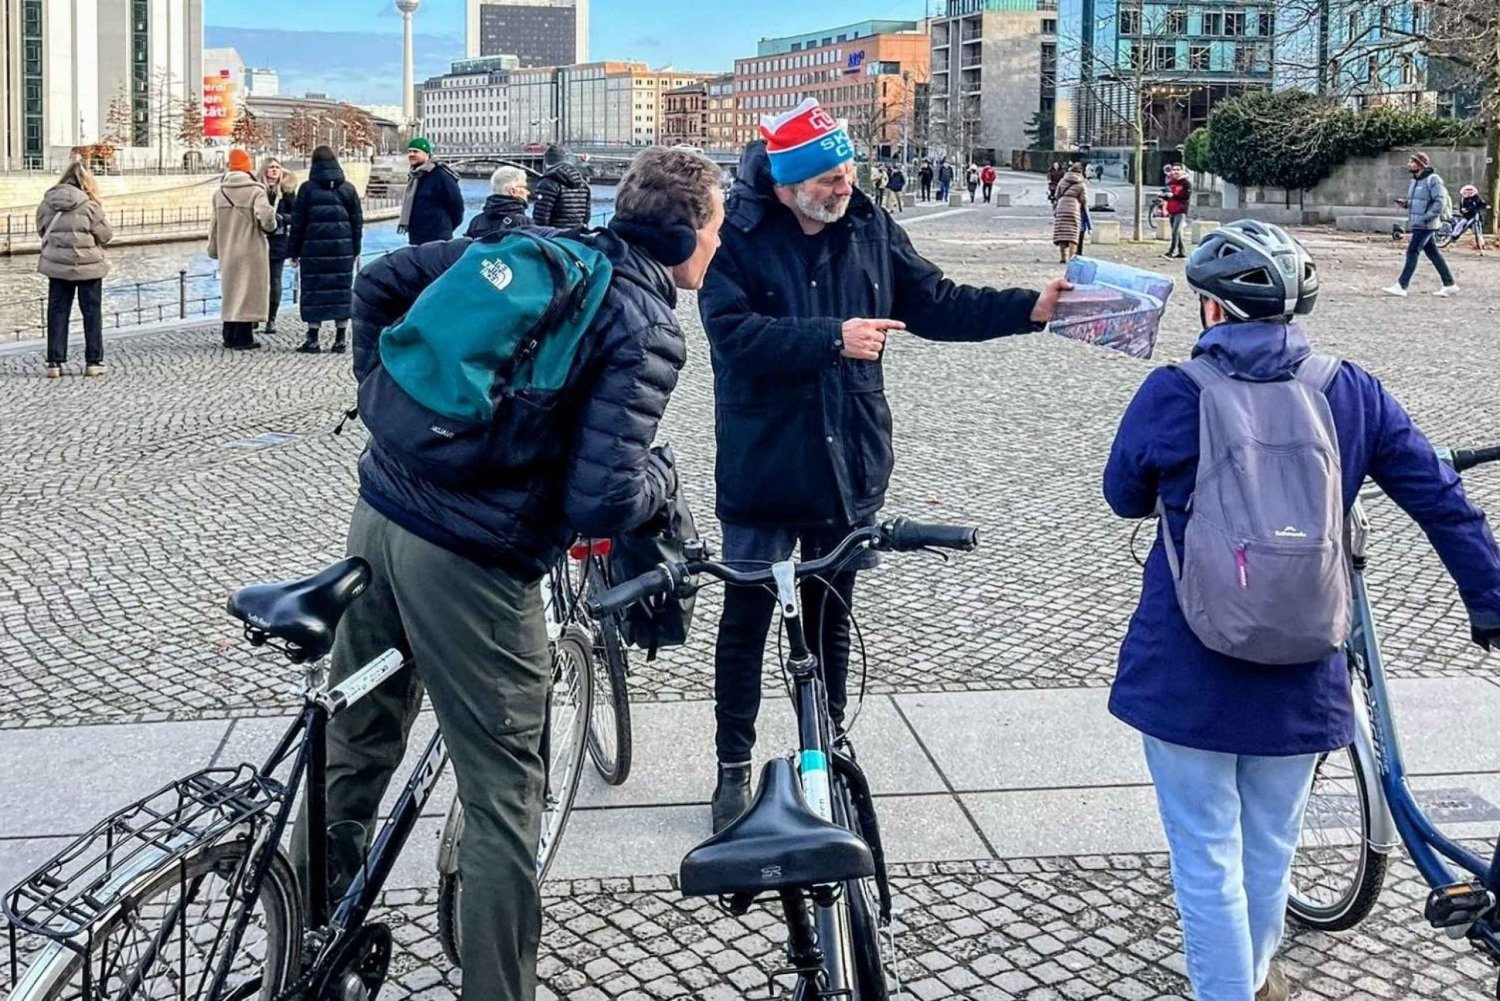 Tour di Berlino Est Ovest e Muro: I luoghi più belli da visitare in bicicletta